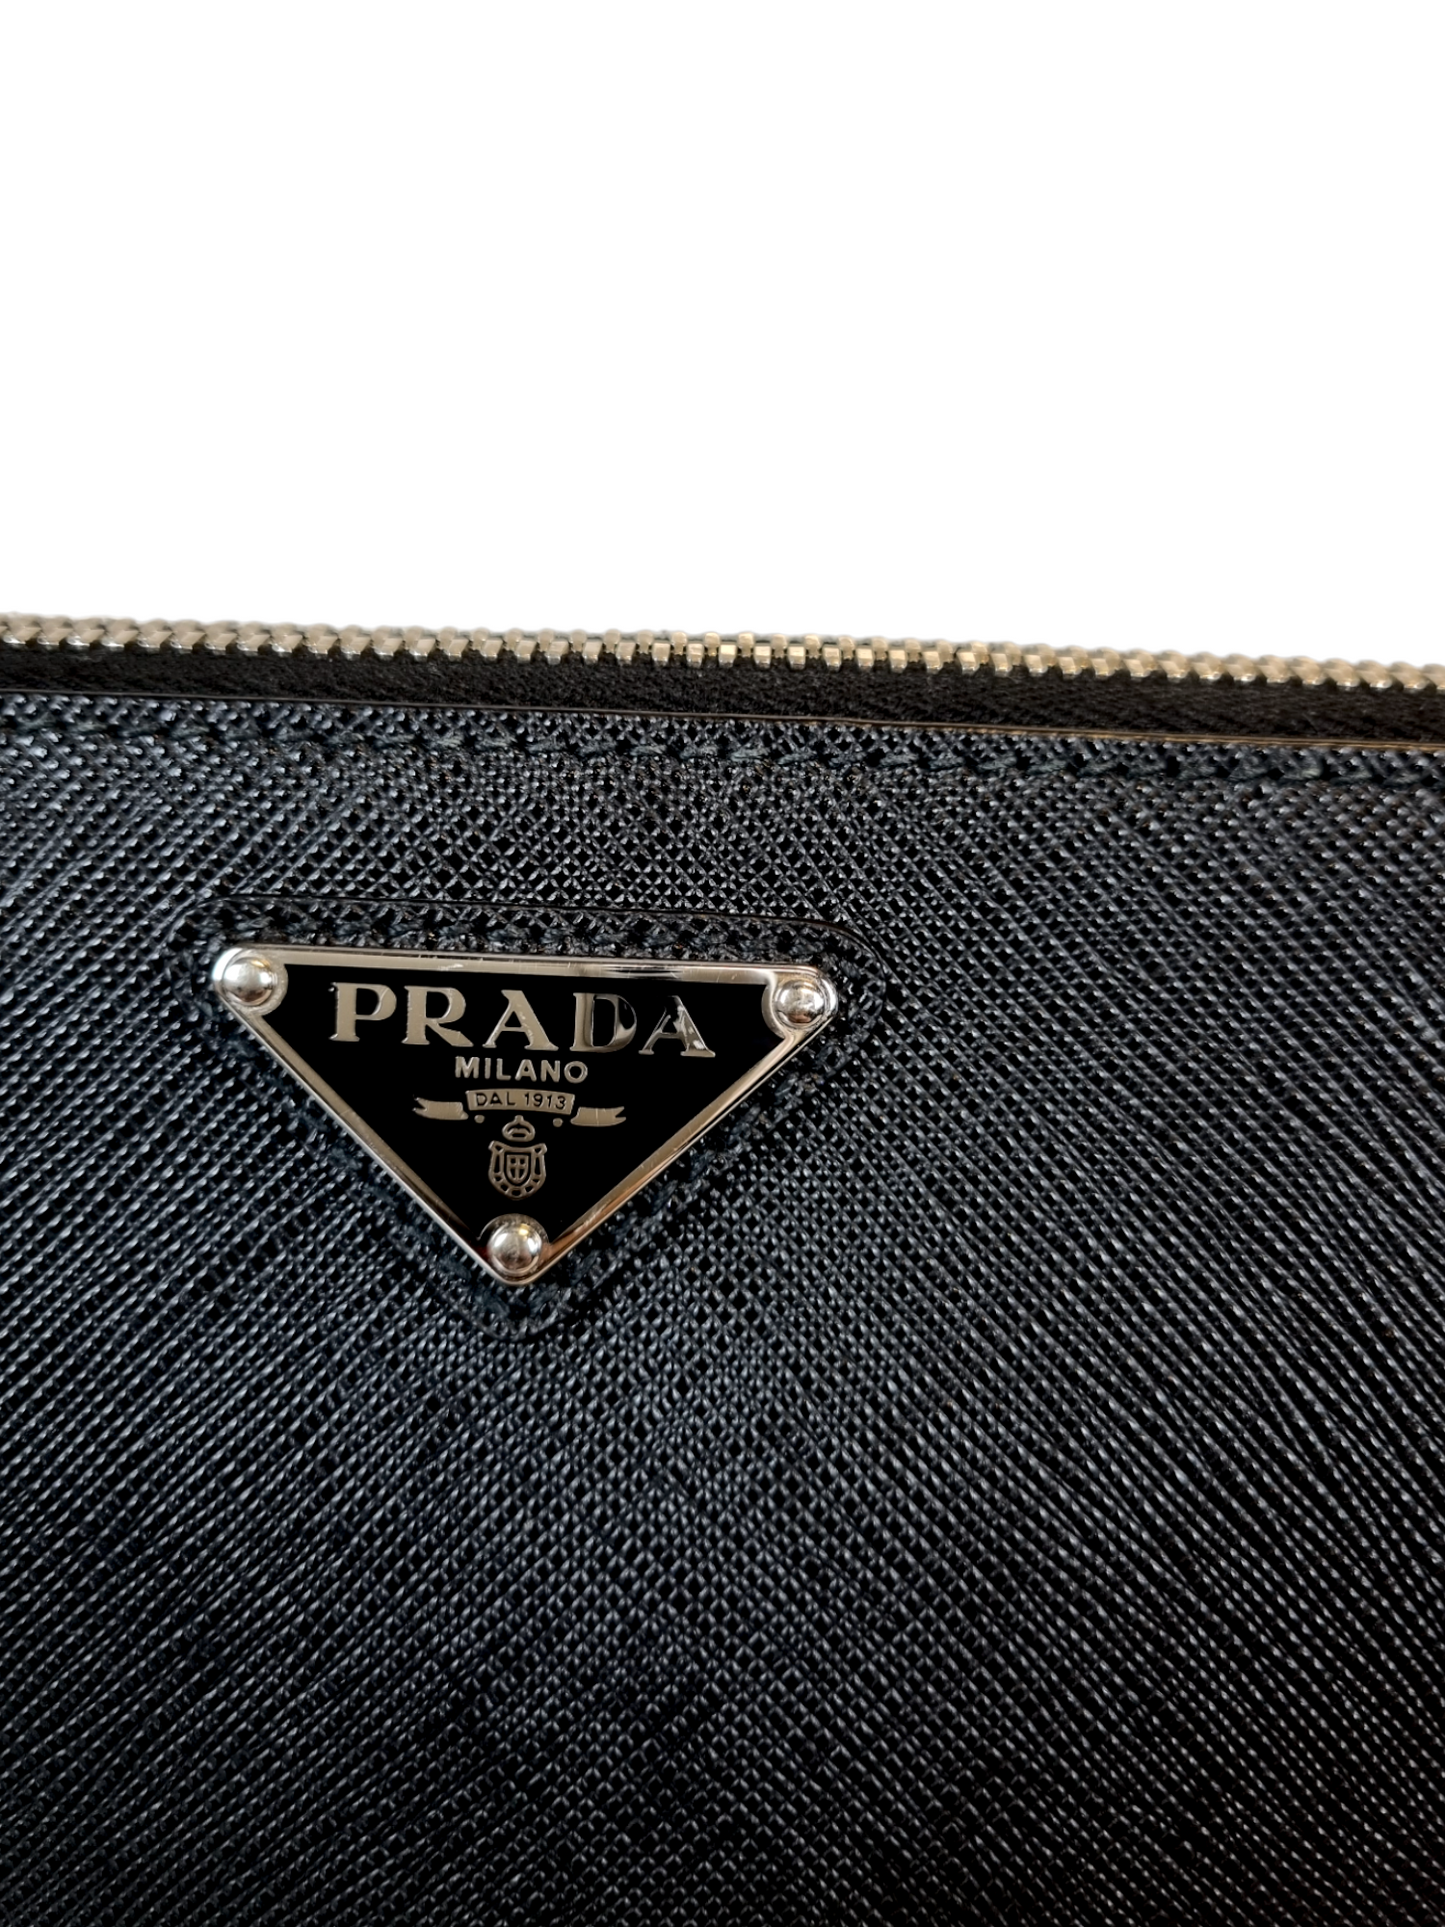 Prada 2010s Black Cross Grain Saffiano Leather Key Case · INTO